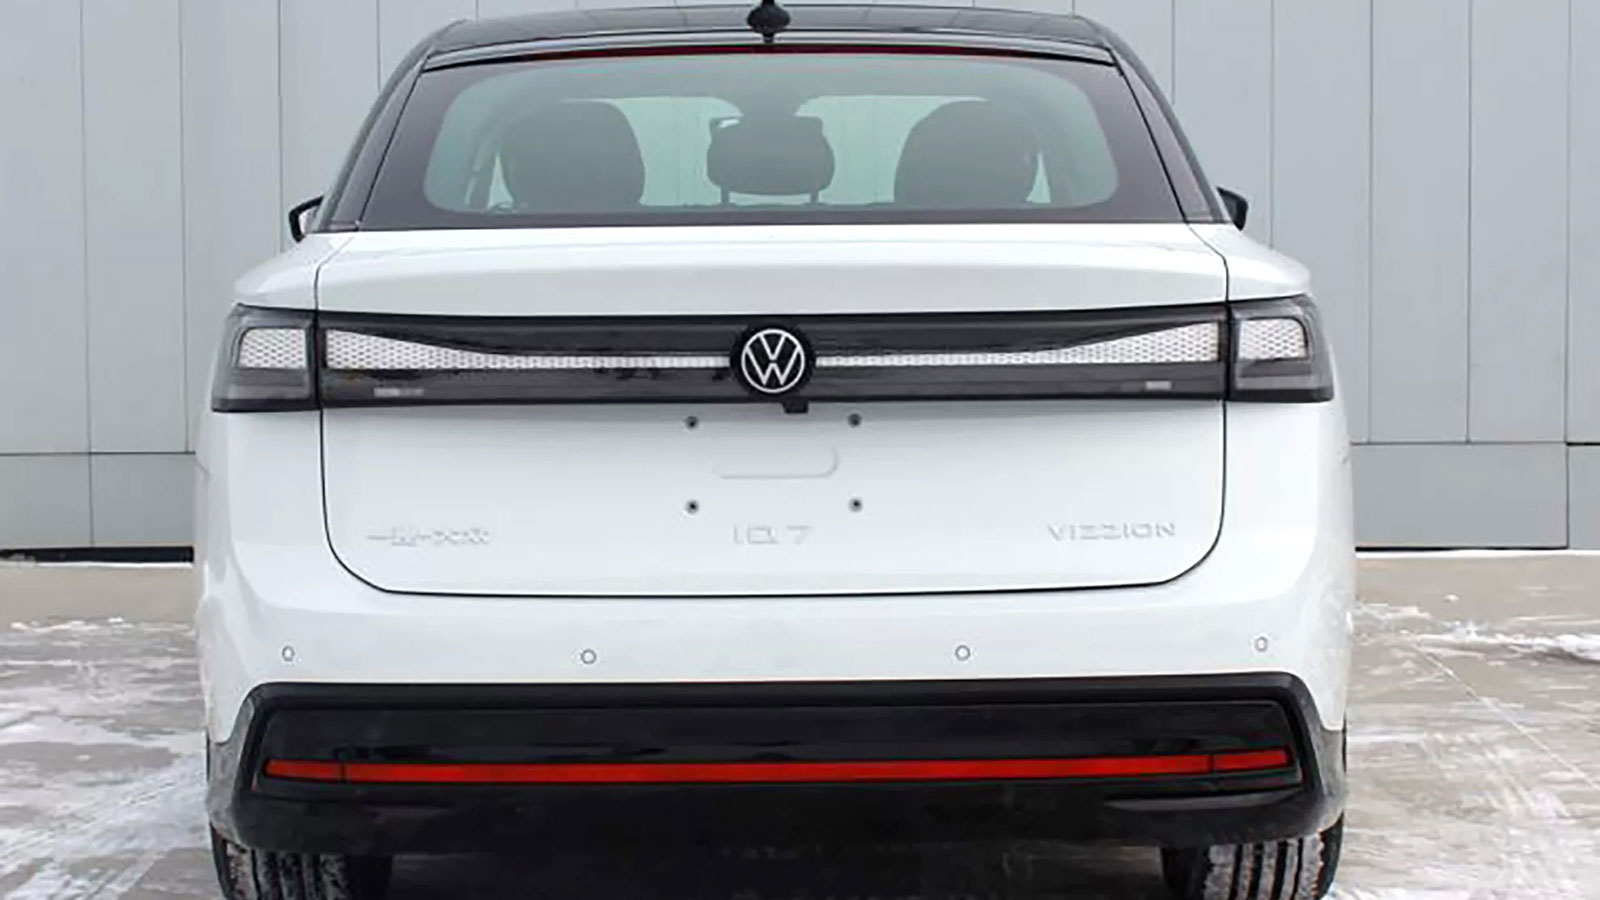 Διέρρευσαν εικόνες που αποκαλύπτουν το νέο Volkswagen ID.7